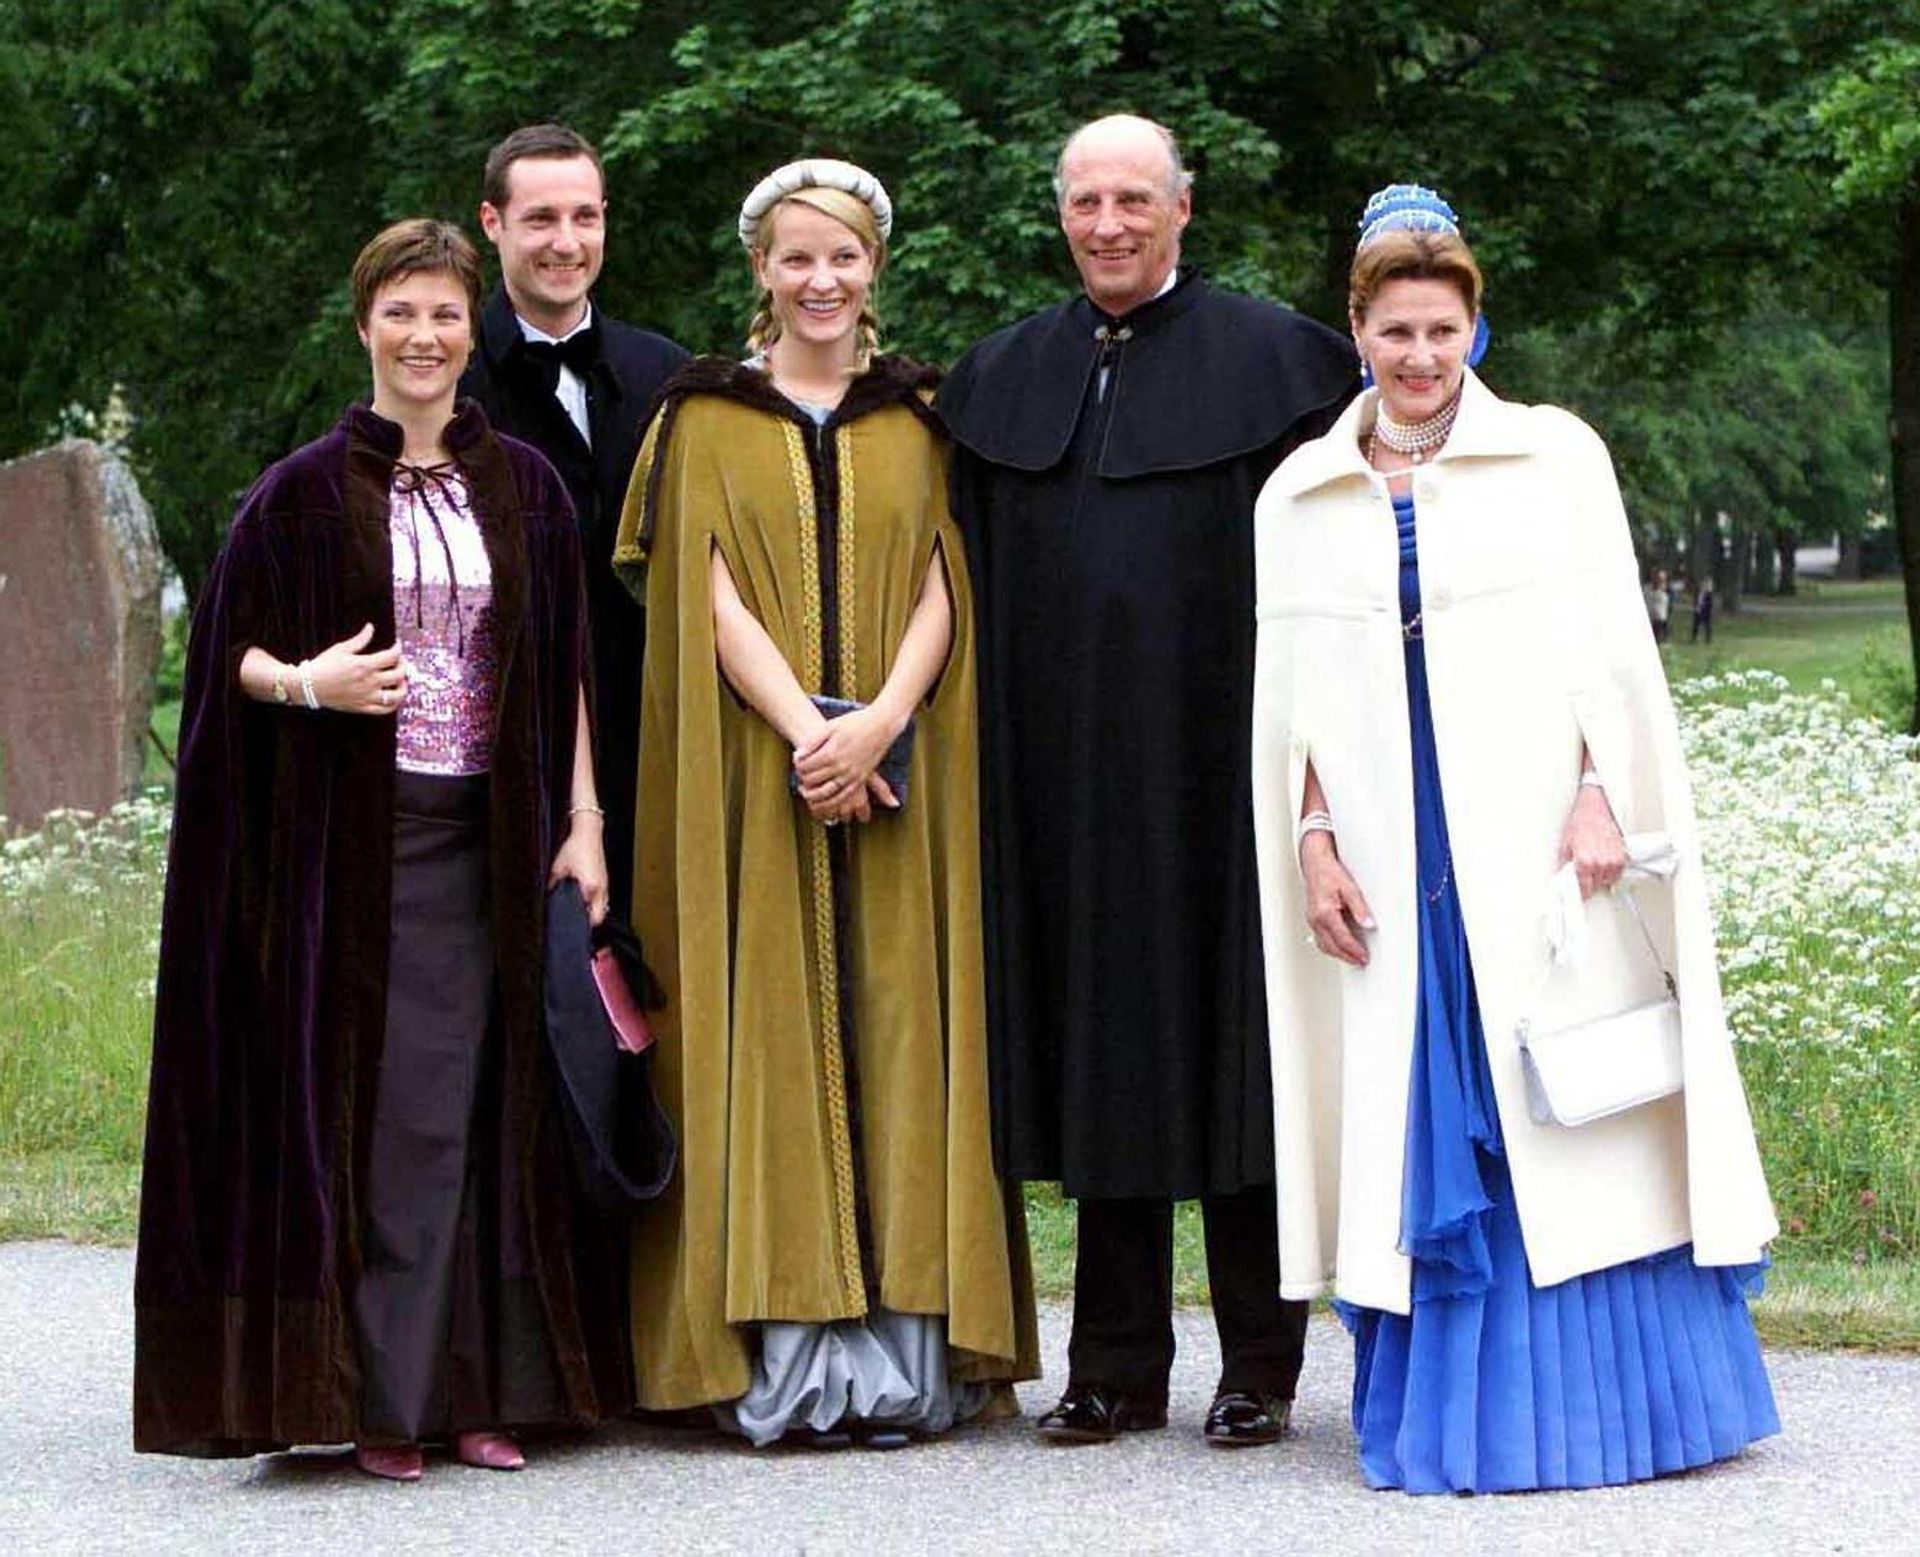 Noorse-royals-huwelijksfeest-Zweden